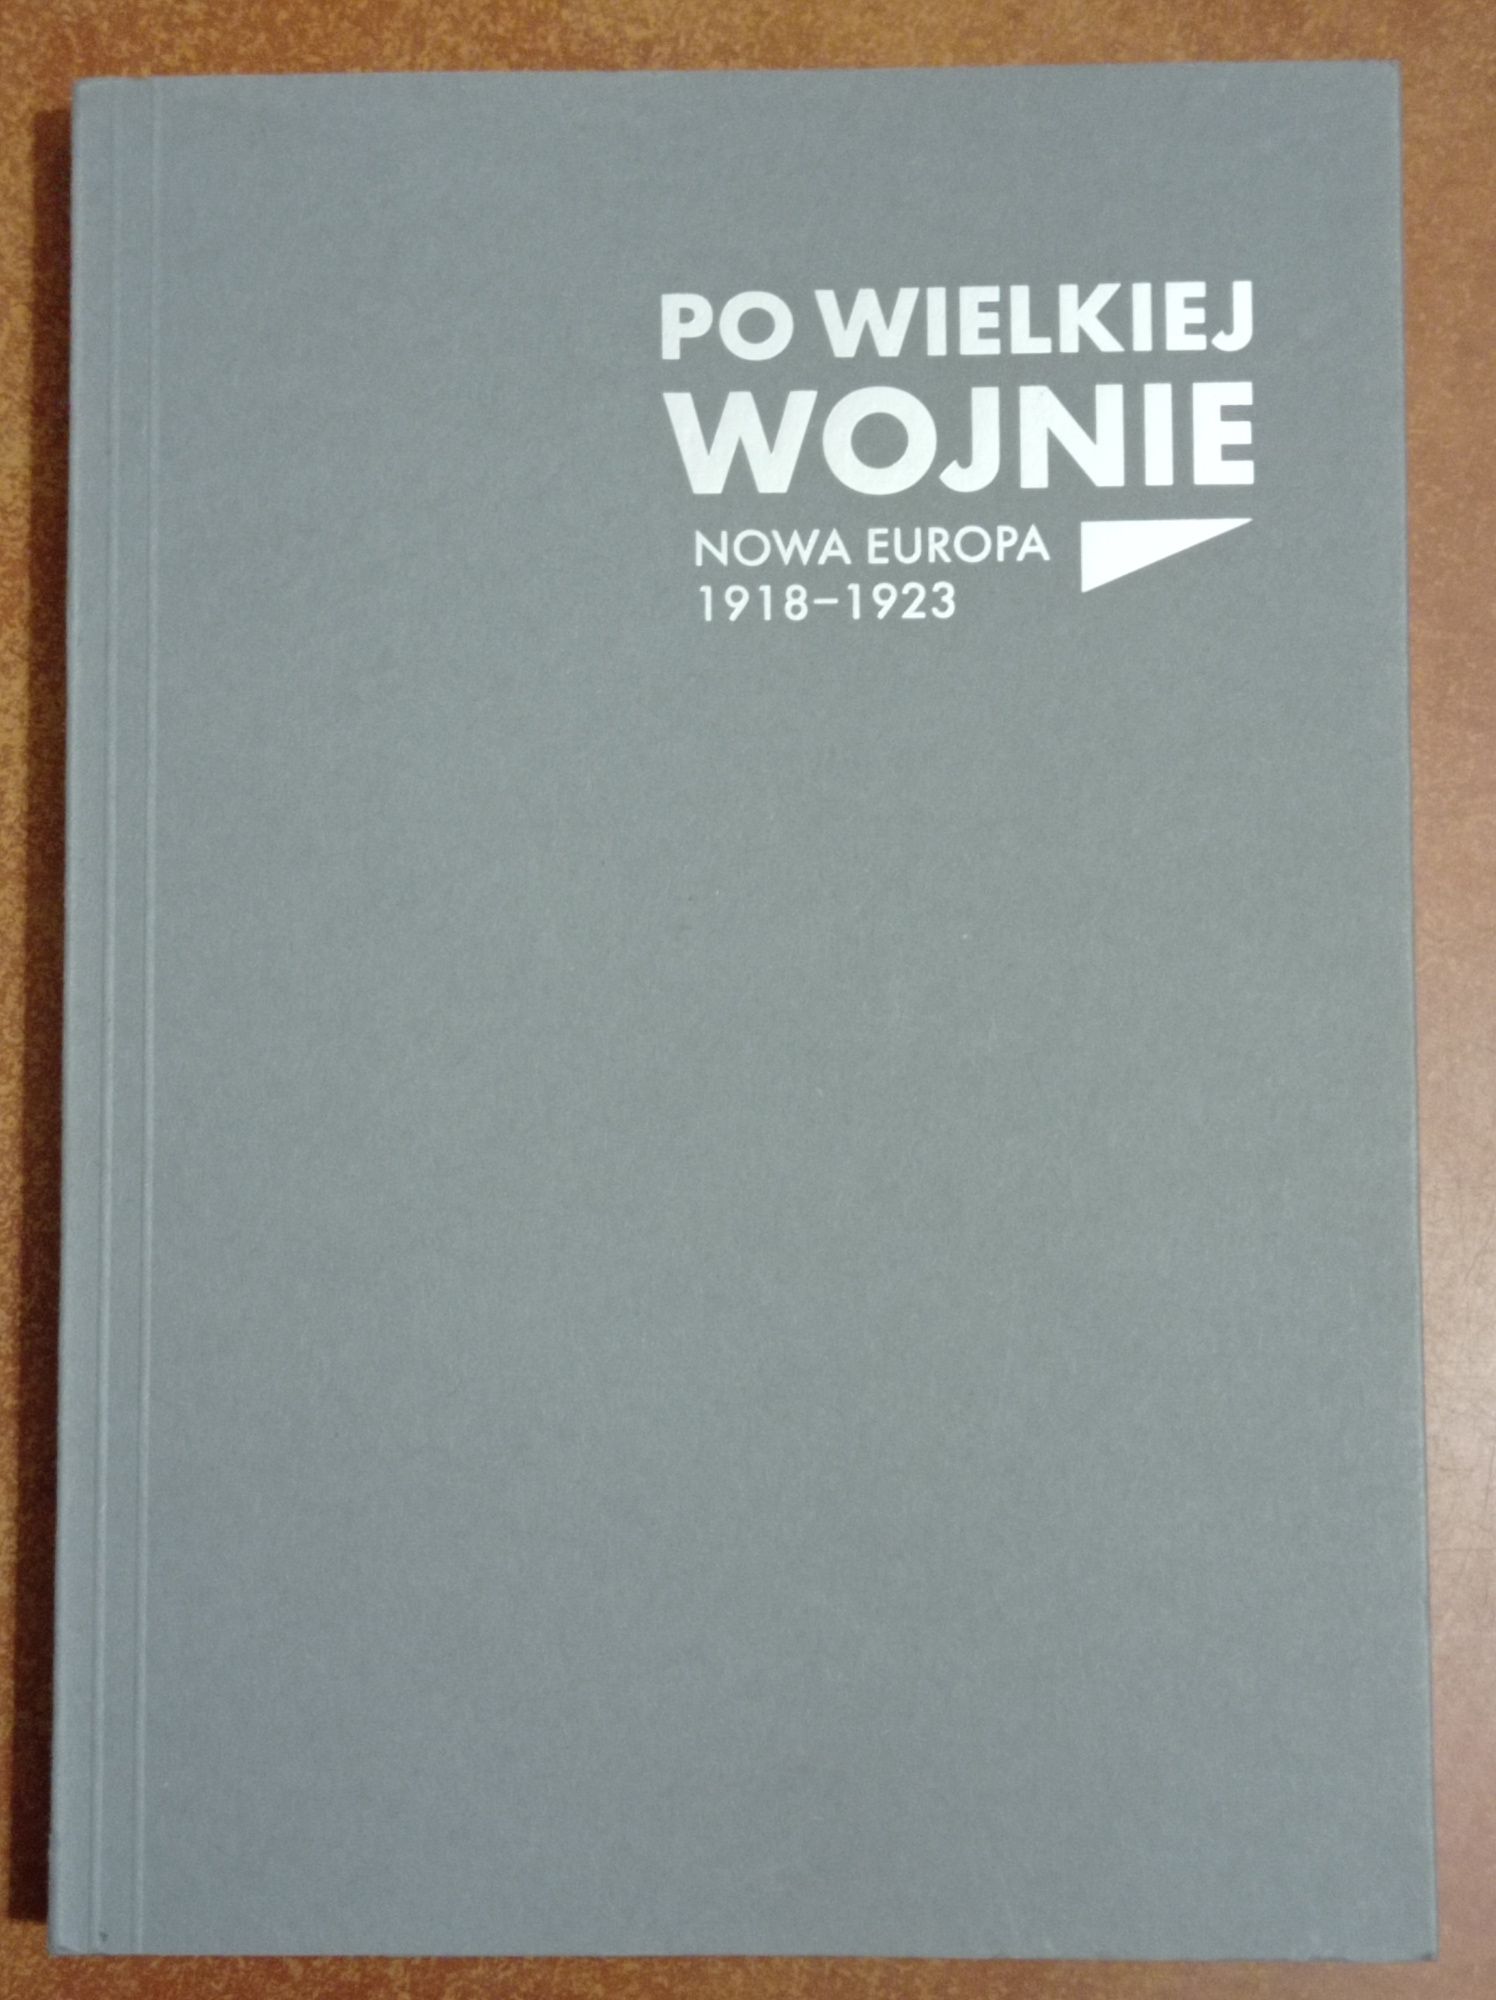 4 książki Przed wojną i pałacem Stopa Górny Śląsk w walce o polskość